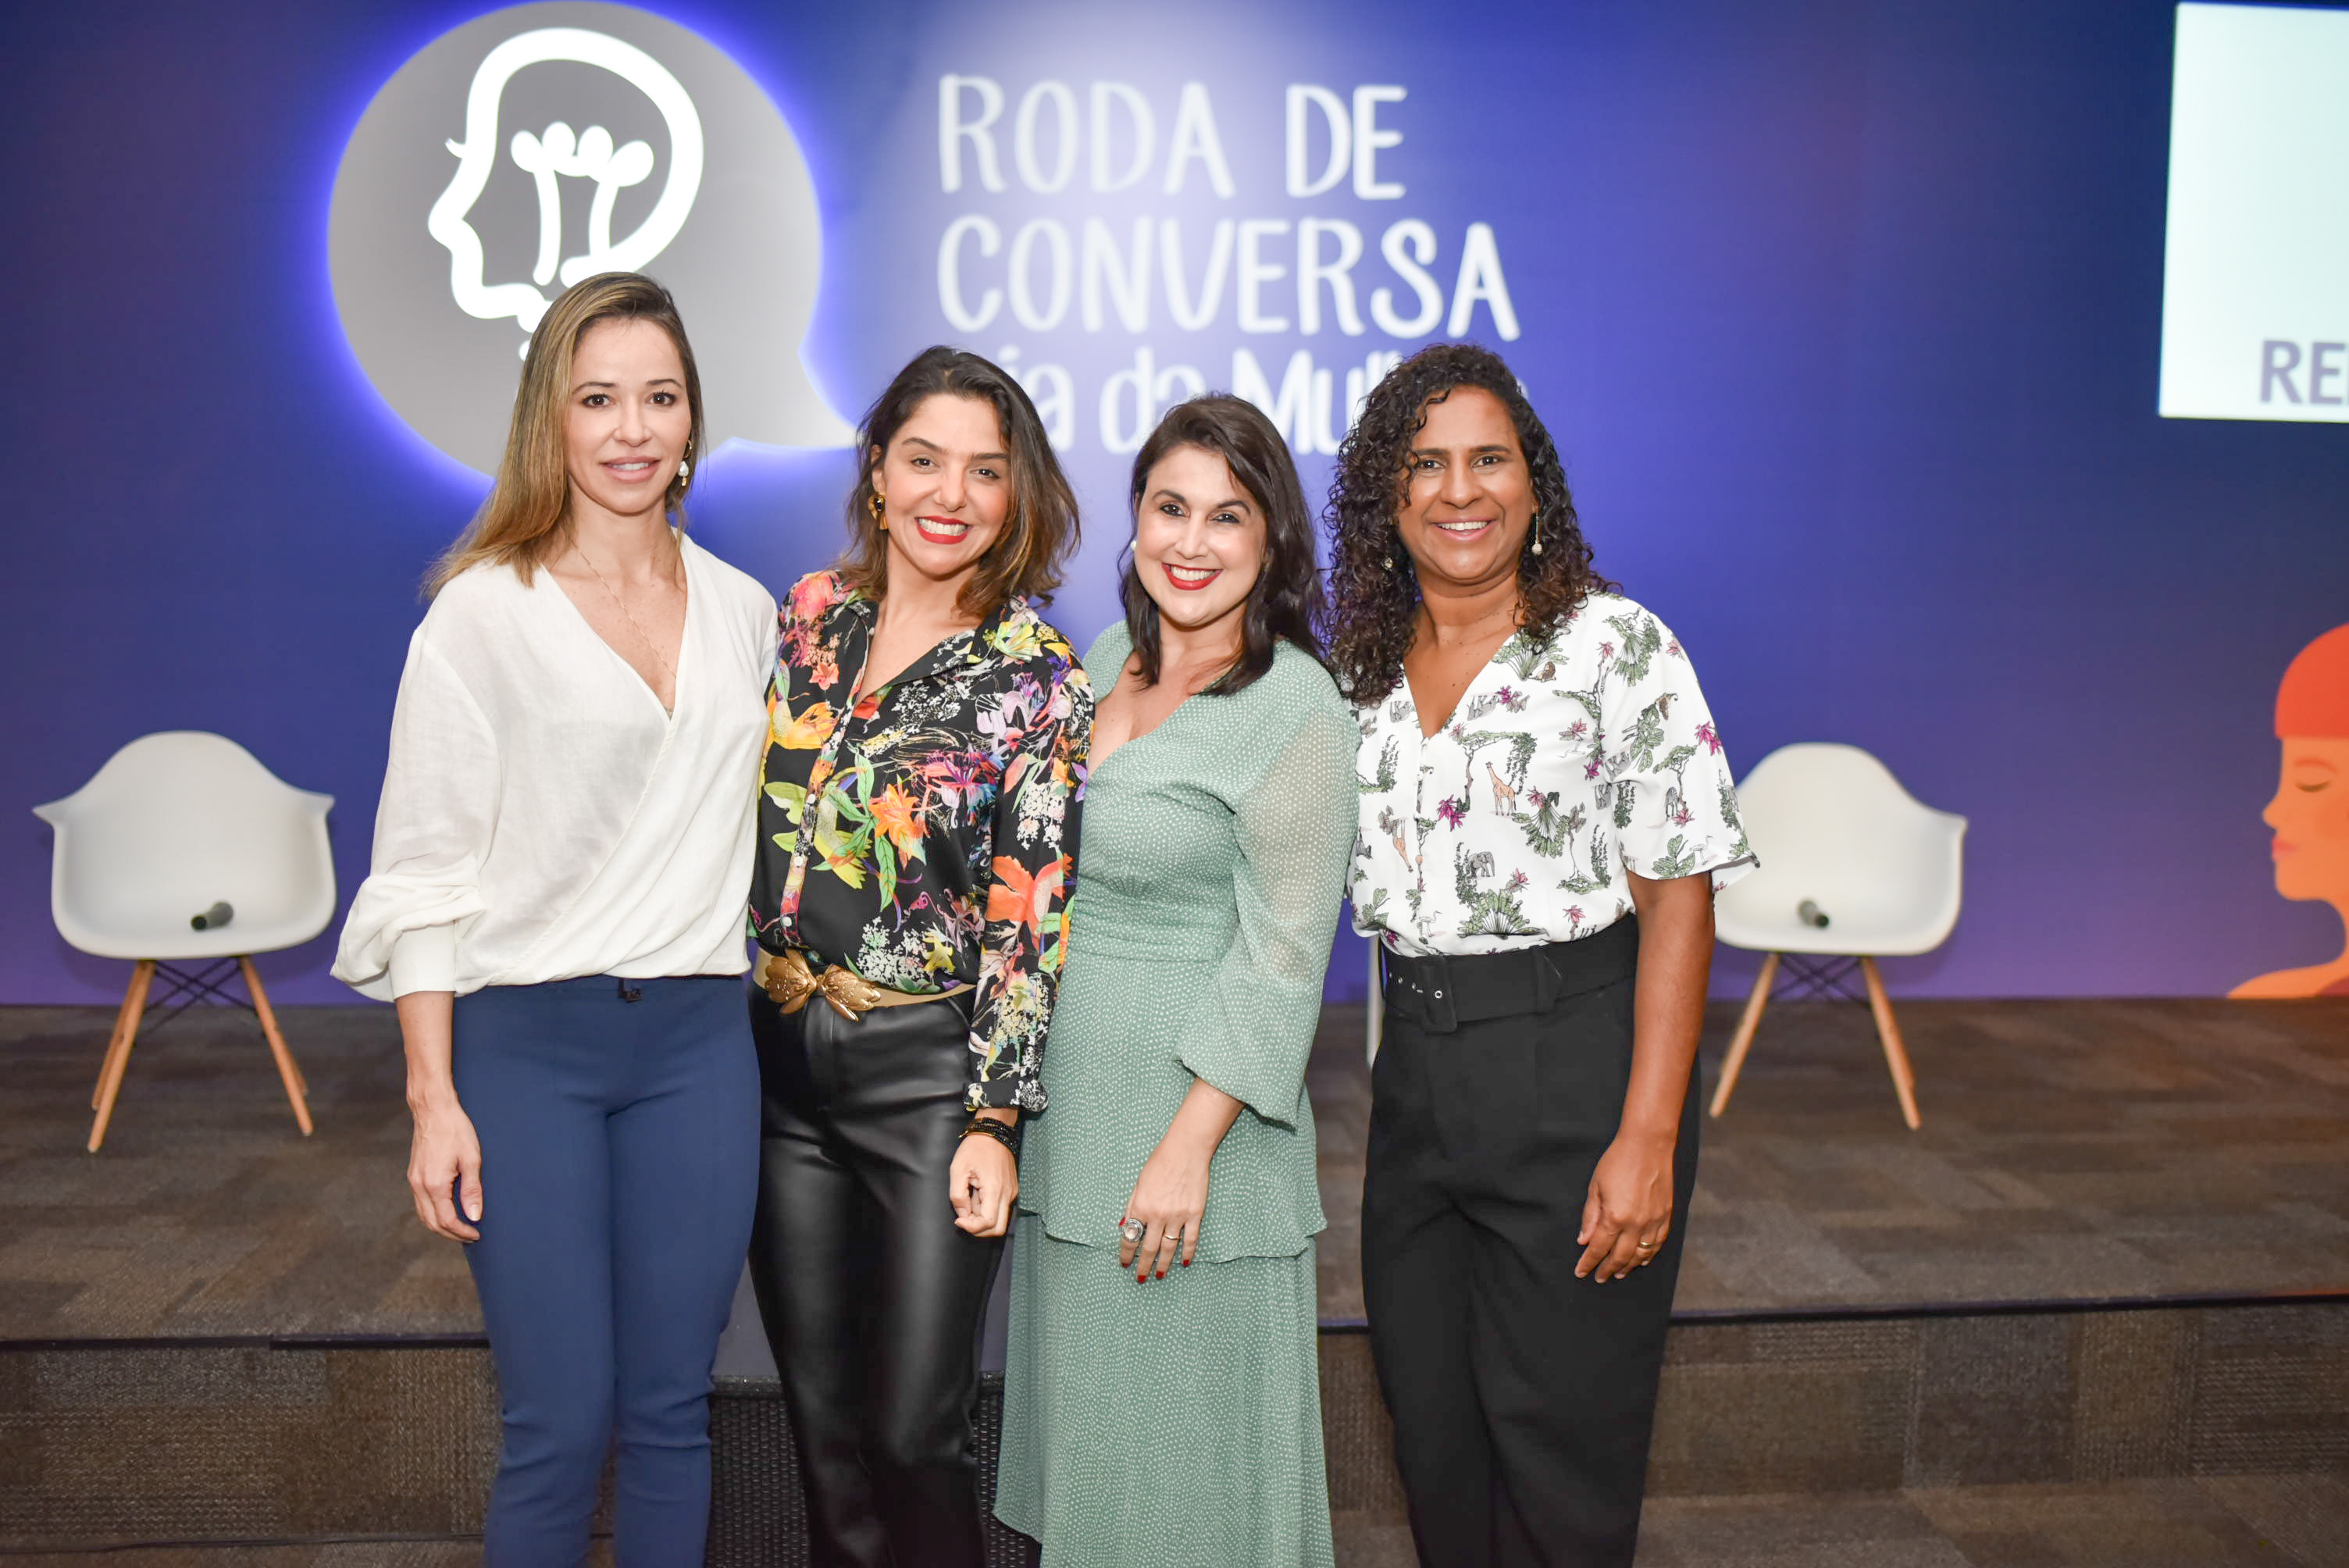 Roda de Conversa da Rede Gazeta 2020 - Dia Internacional da Mulher: Ana Paula Galeão, Mariana Perini, Renata Rasseli e Jaqueline Moraes